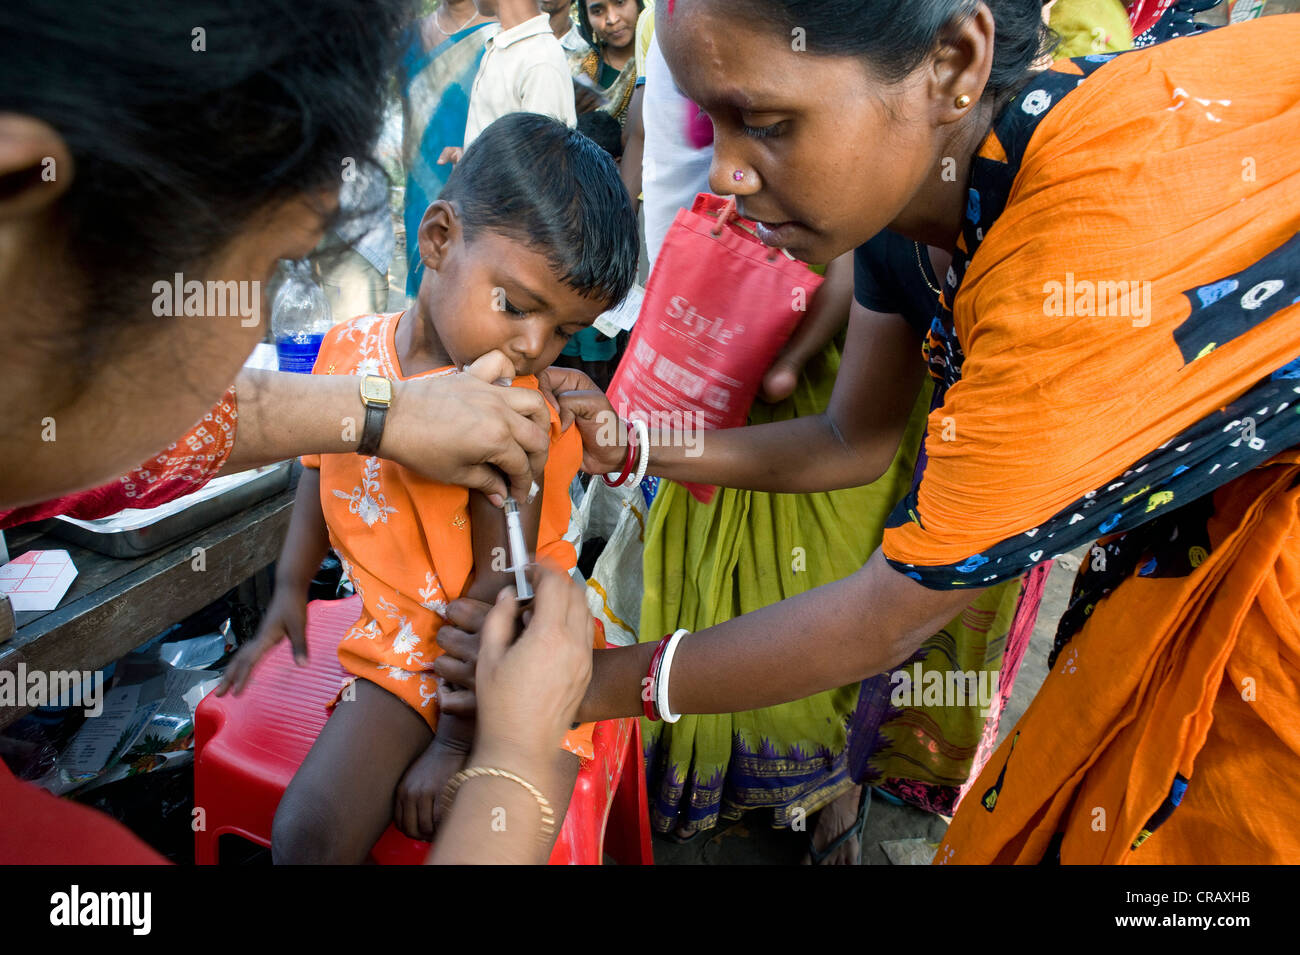 Il ragazzo viene vaccinato, campagna di vaccinazione per i bambini dal tedesco medici per i Paesi in via di sviluppo a Calcutta, , India, Asia Foto Stock